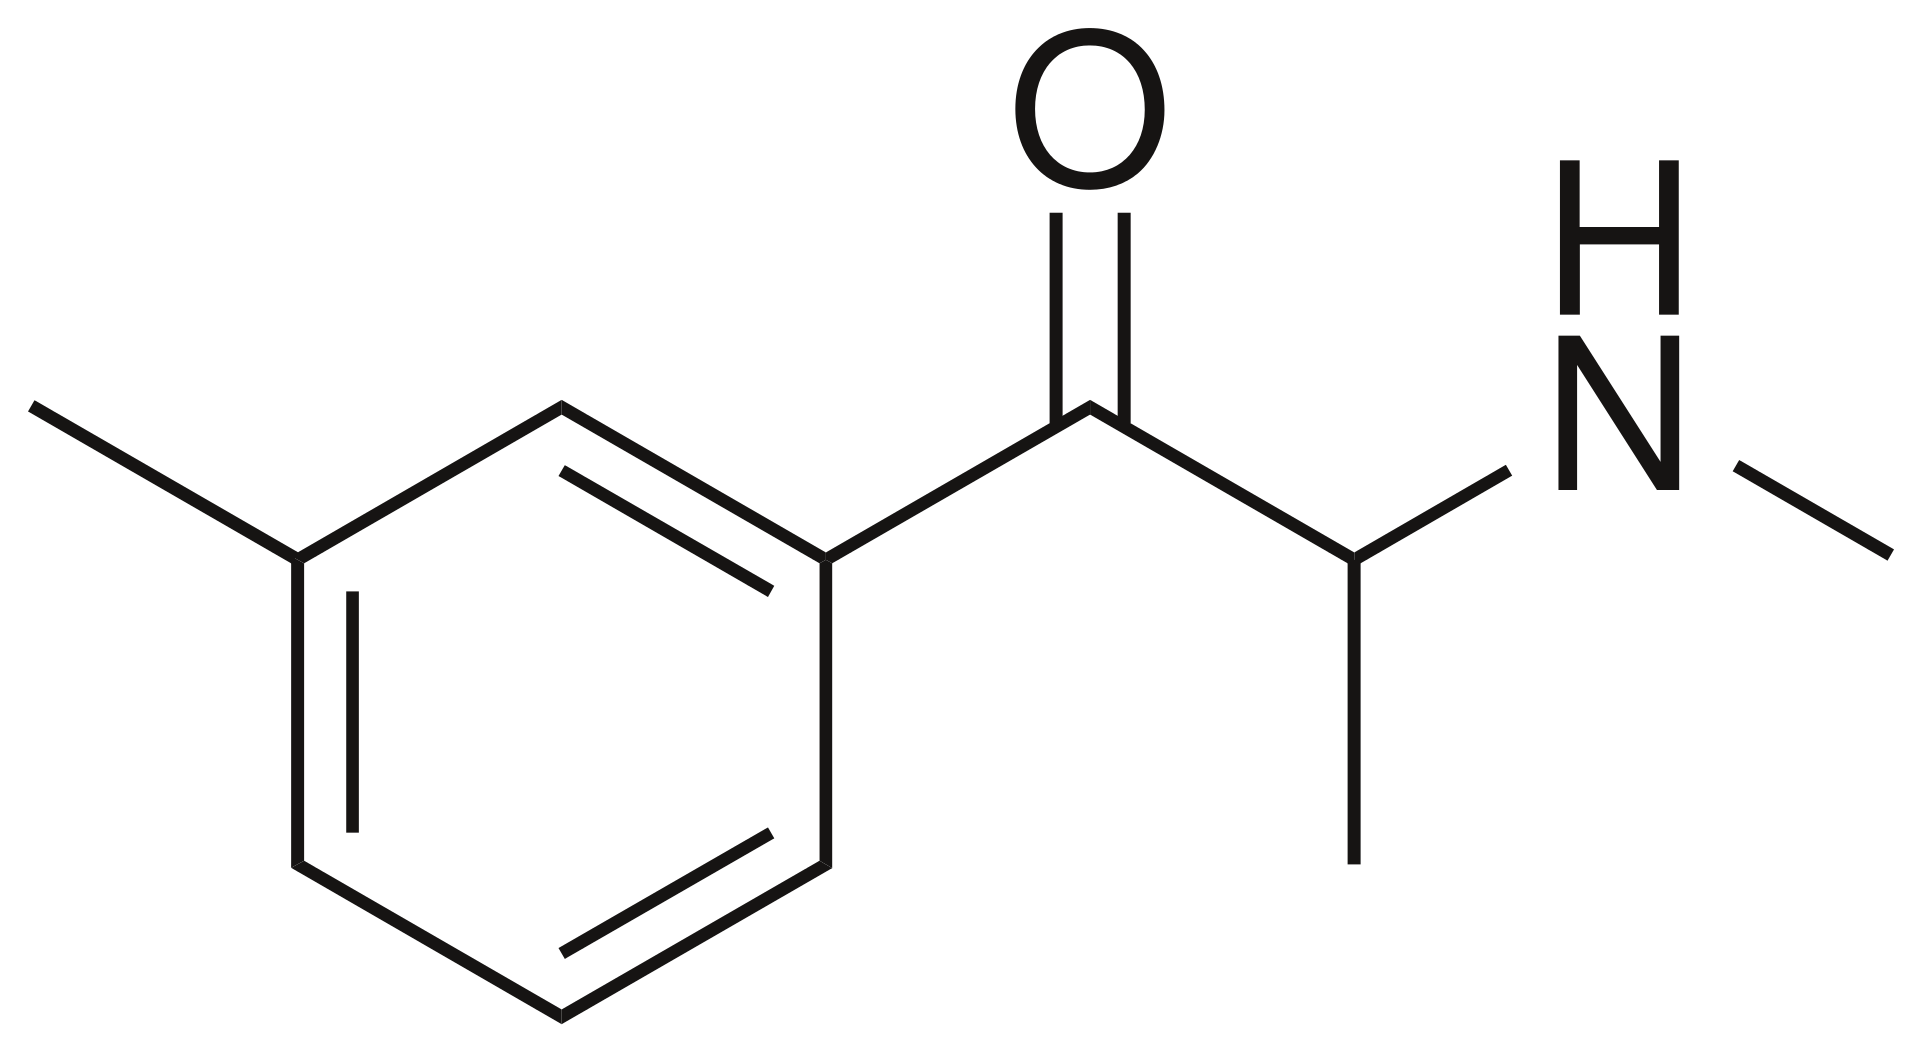 Skeletal Formula of 3-Methylmethcathinone, also known as 3-MMC and Metaphedrone, designer drug